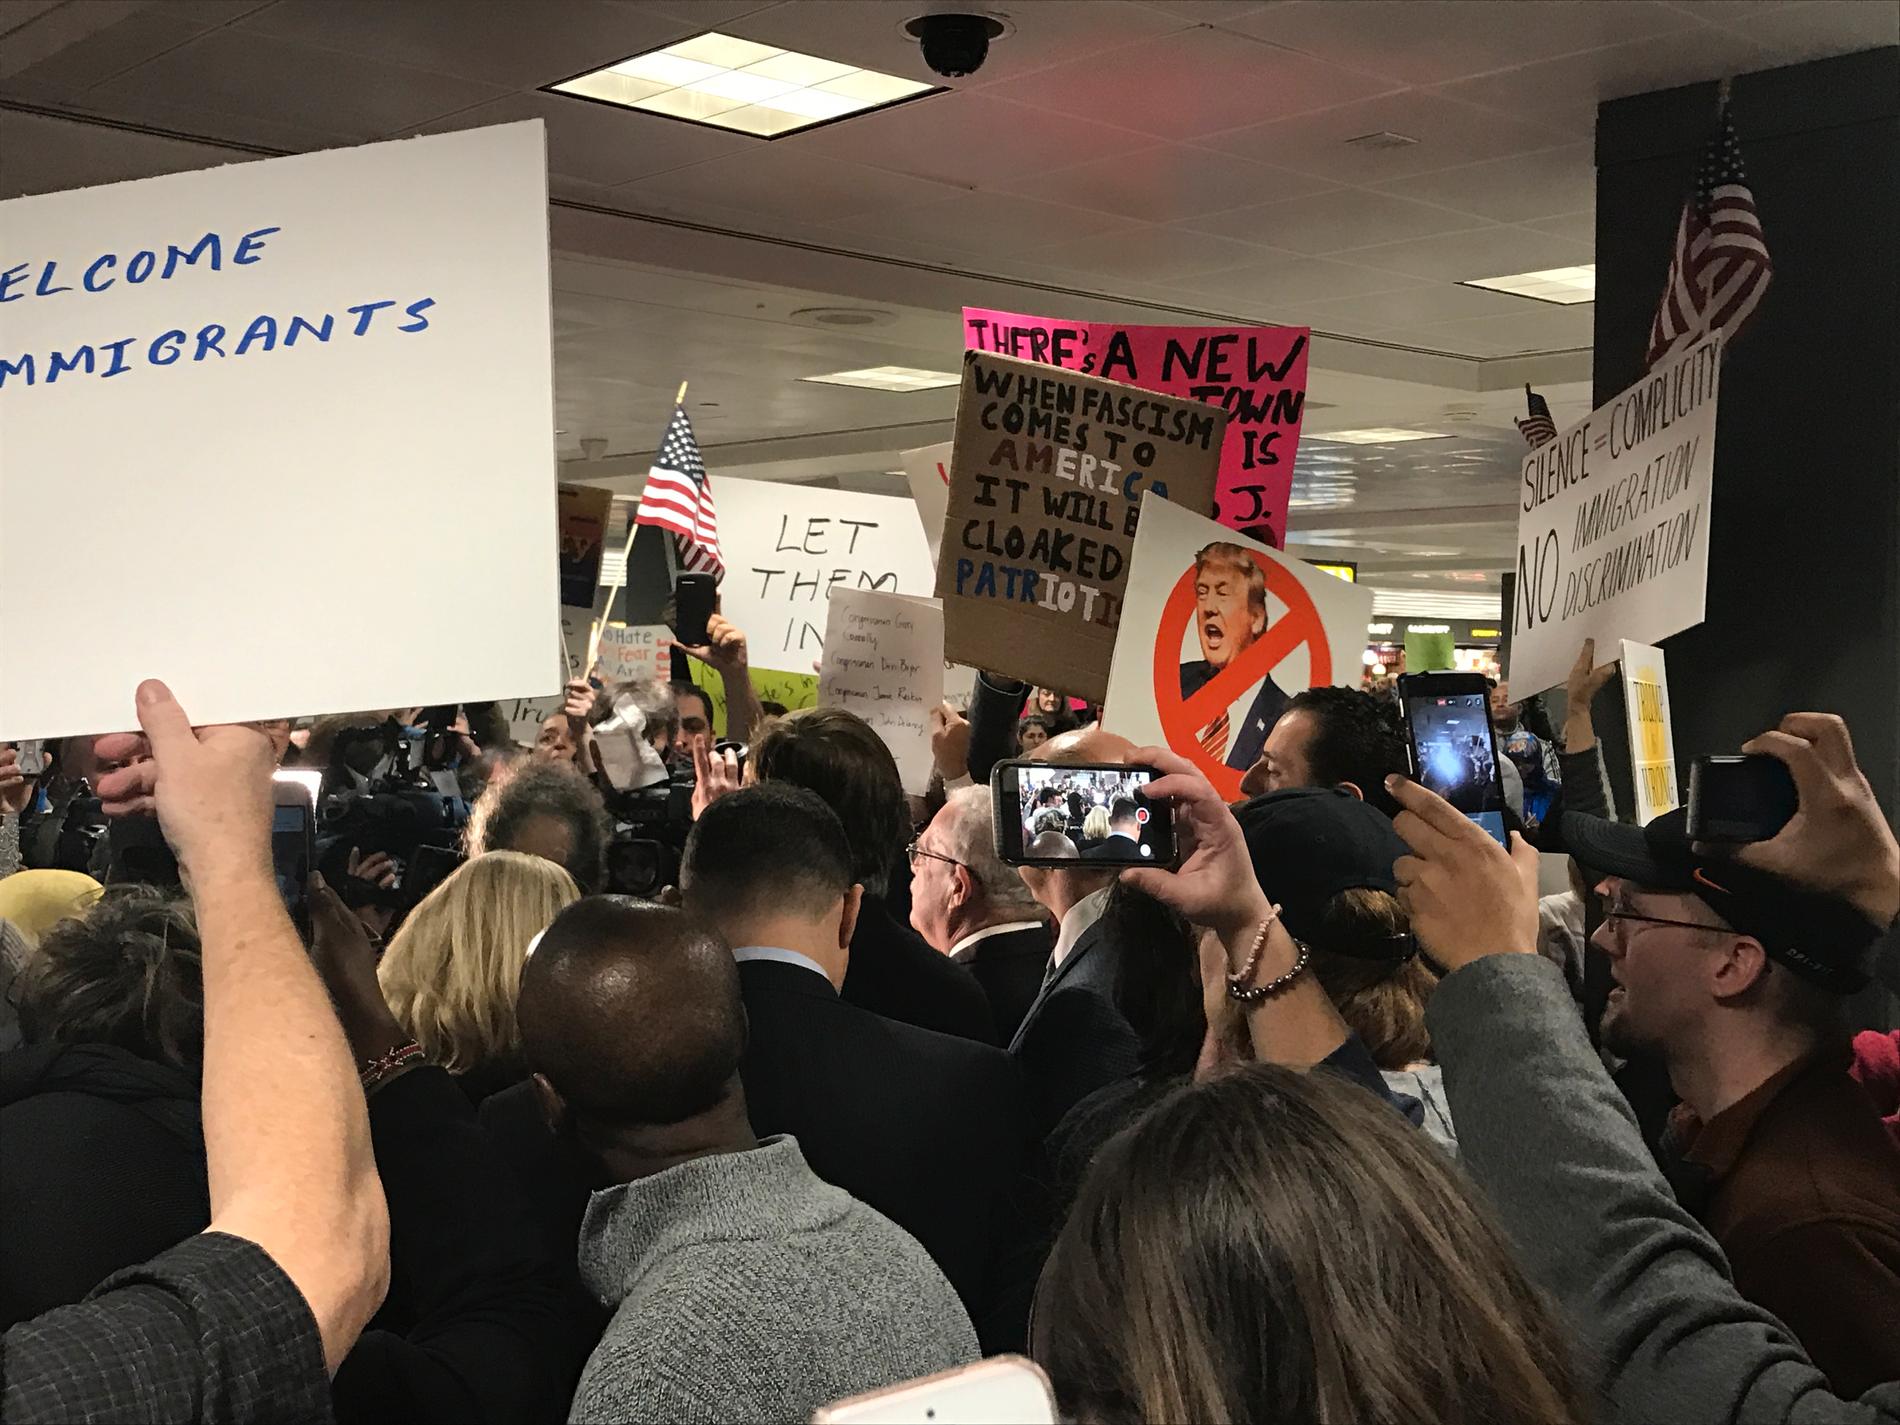 Många av aktivisterna har skyltar med Trump-kritiska budskap och uppmaningar till solidaritet. Talkörer om öppna gränser ekar mellan väggarna.